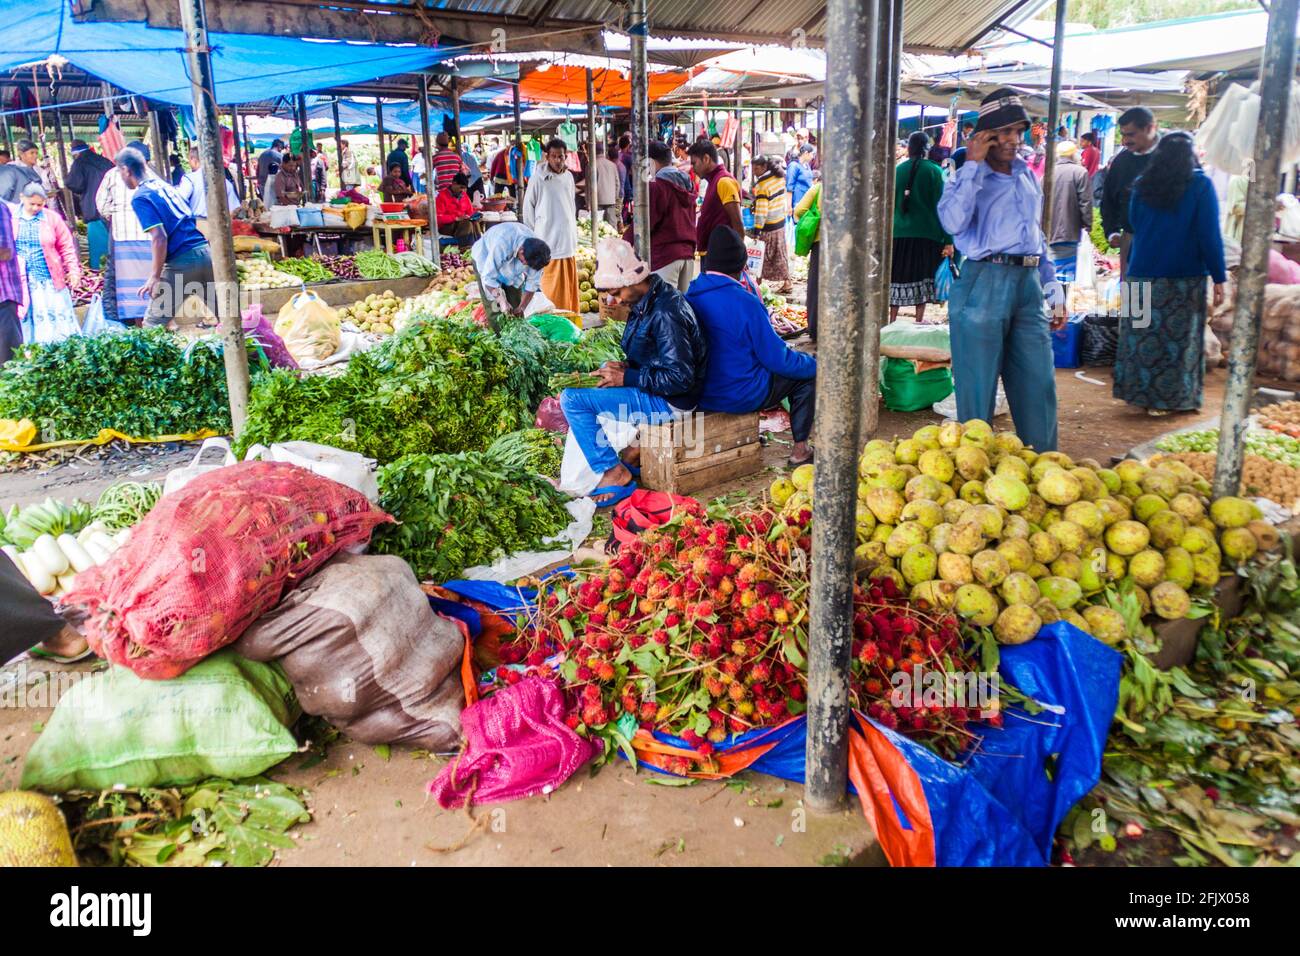 NUWARA  ELIYA, SRI LANKA - JULY 17, 2016: People shop at the produce market in Nuwara Eliya town. Stock Photo